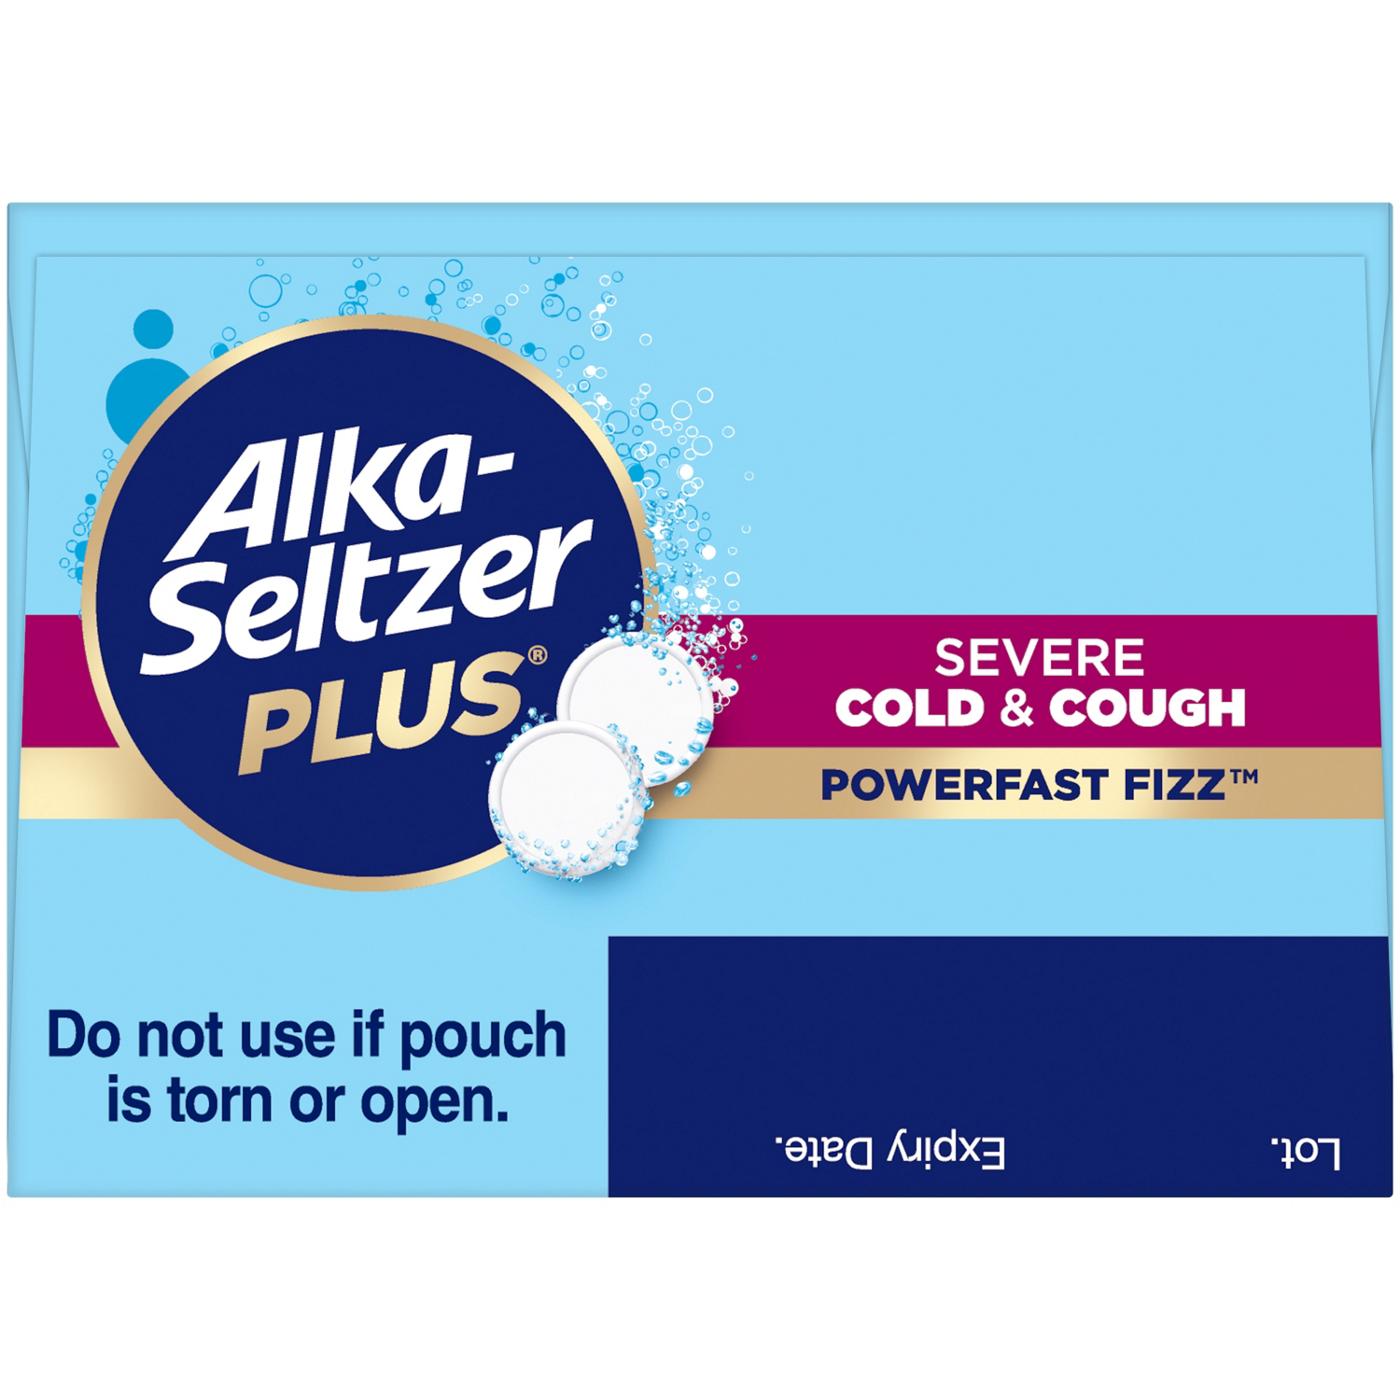 Alka-Seltzer Plus Severe Cold & Cough Powerfast Fizz Tablets - Citrus; image 2 of 6